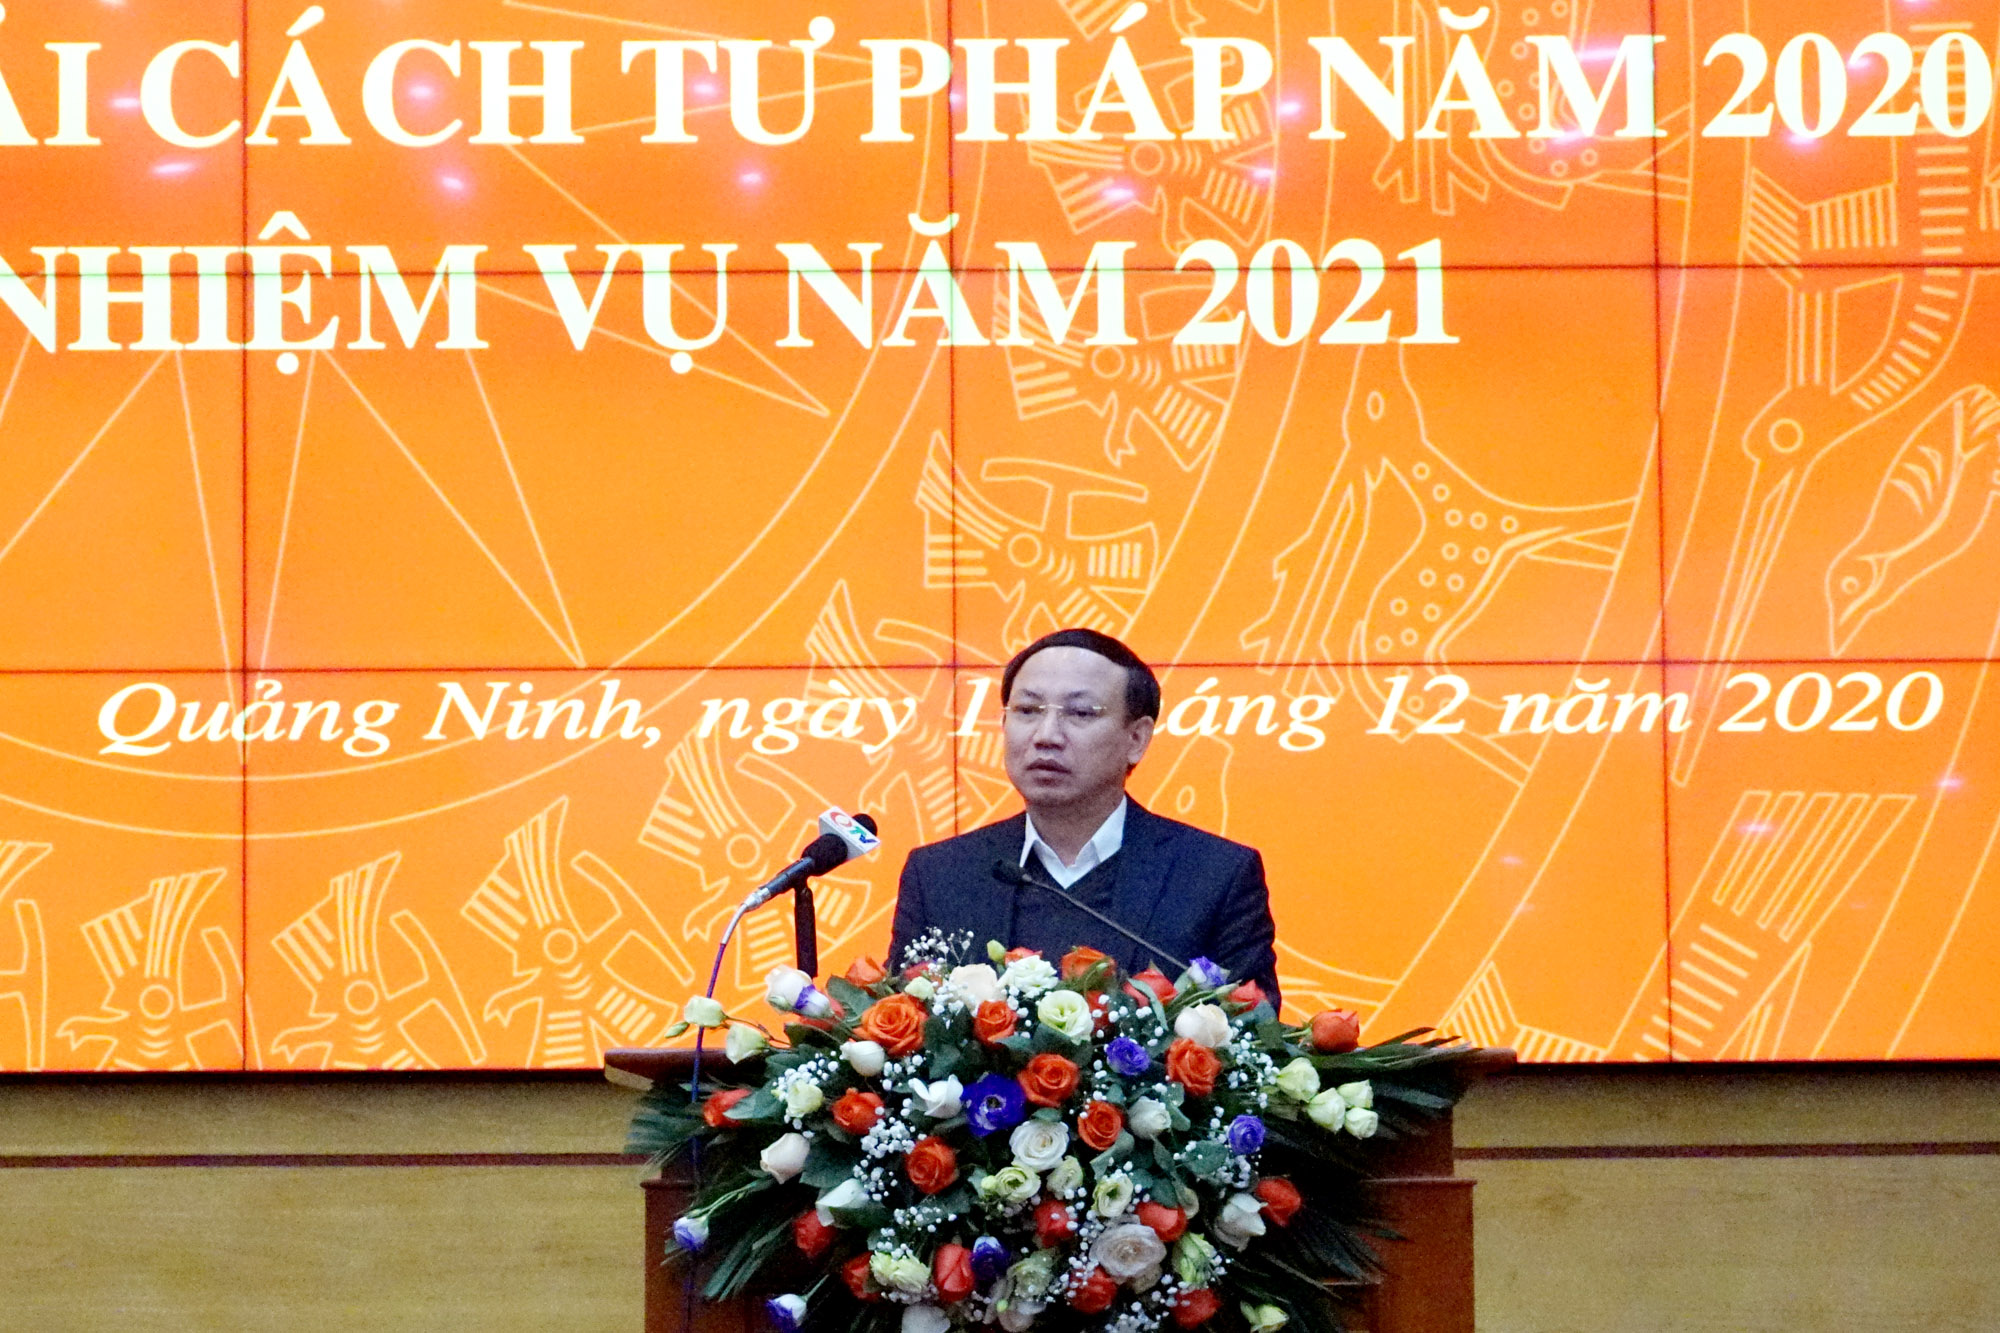 Đồng chí Nguyễn Xuân Ký, Bí thư Tỉnh ủy, Chủ tịch HĐND tỉnh, phát biểu chỉ đạo hội nghị.